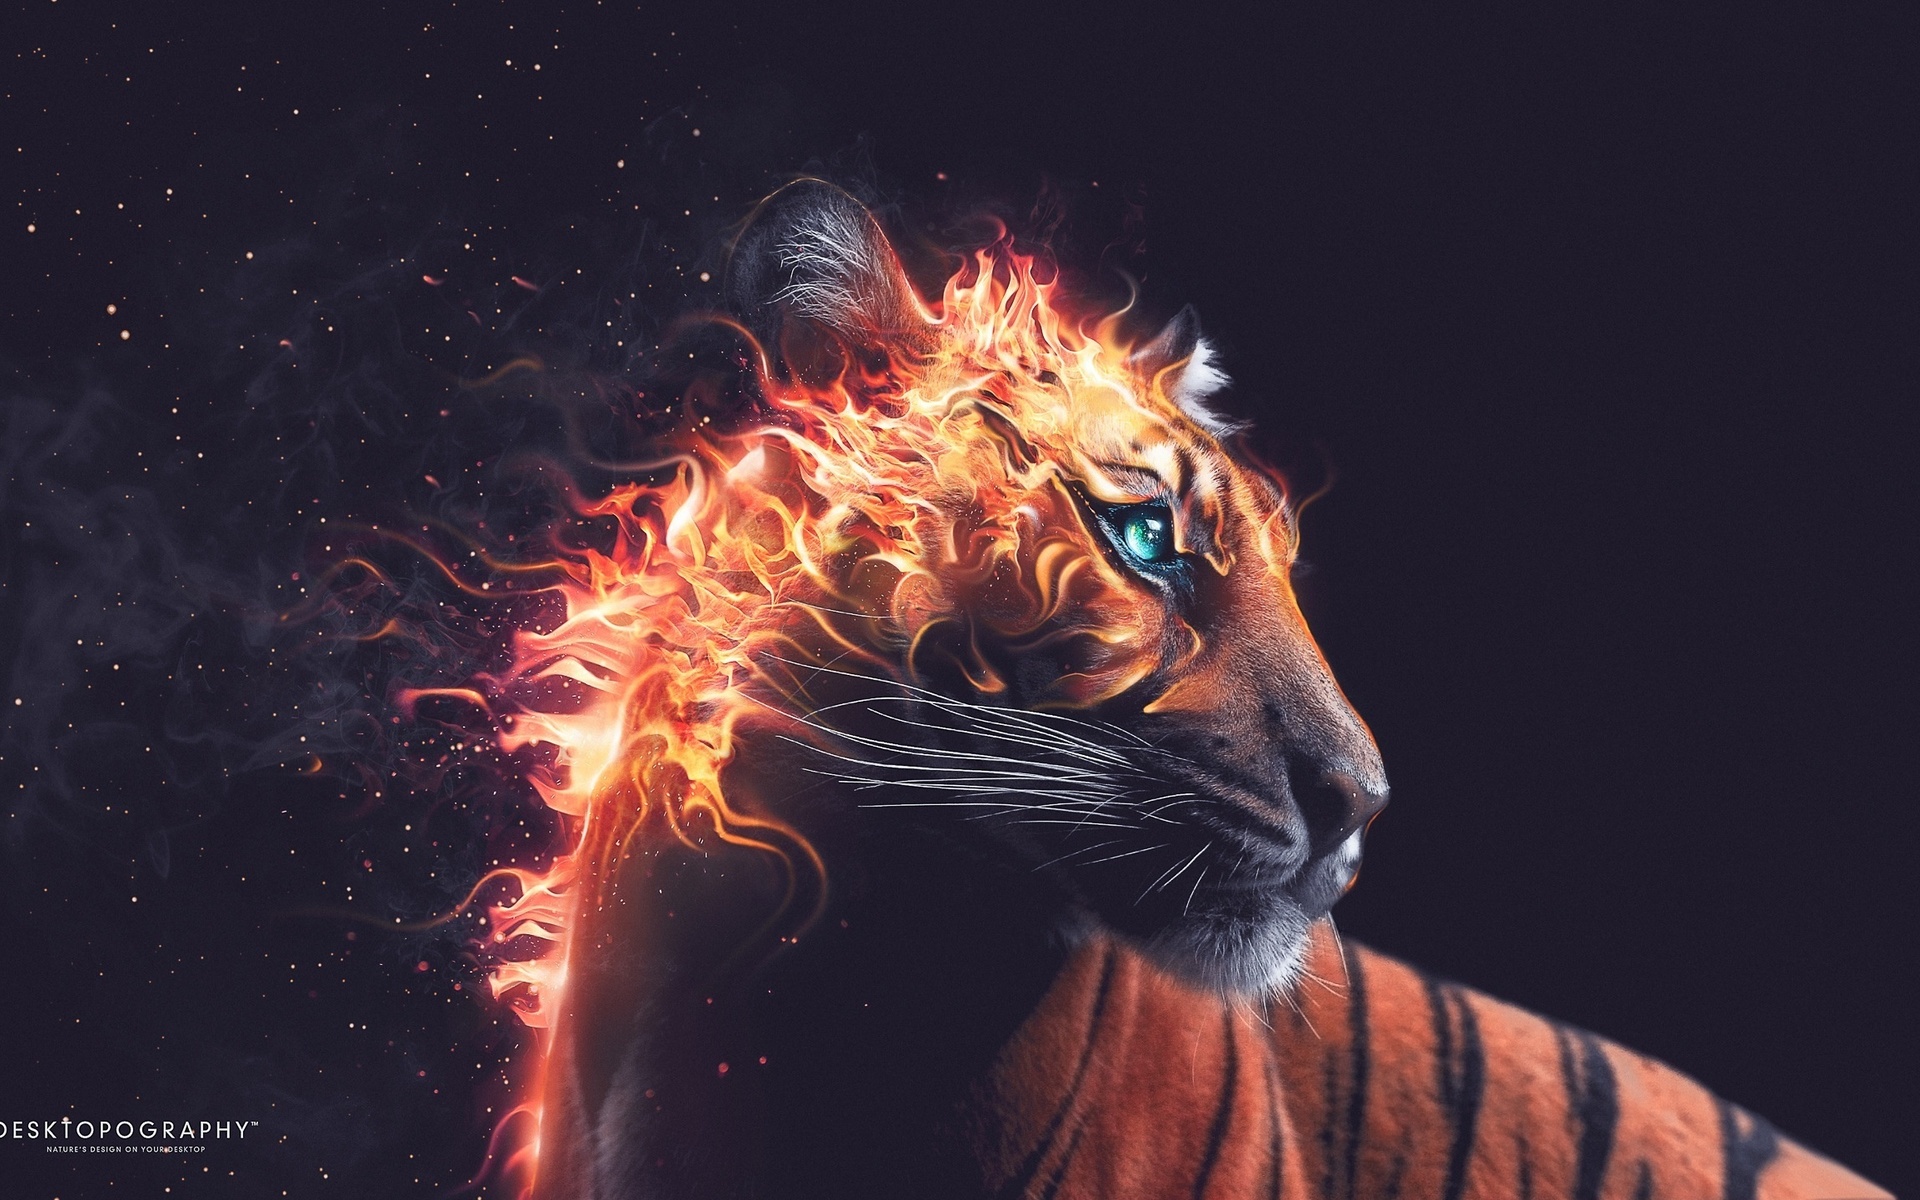 بک گراند هنری پسرانه هنر دیجیتال ترکیبی مجازی و واقعیت ببر آتش گرفته نمادی از شجاعت